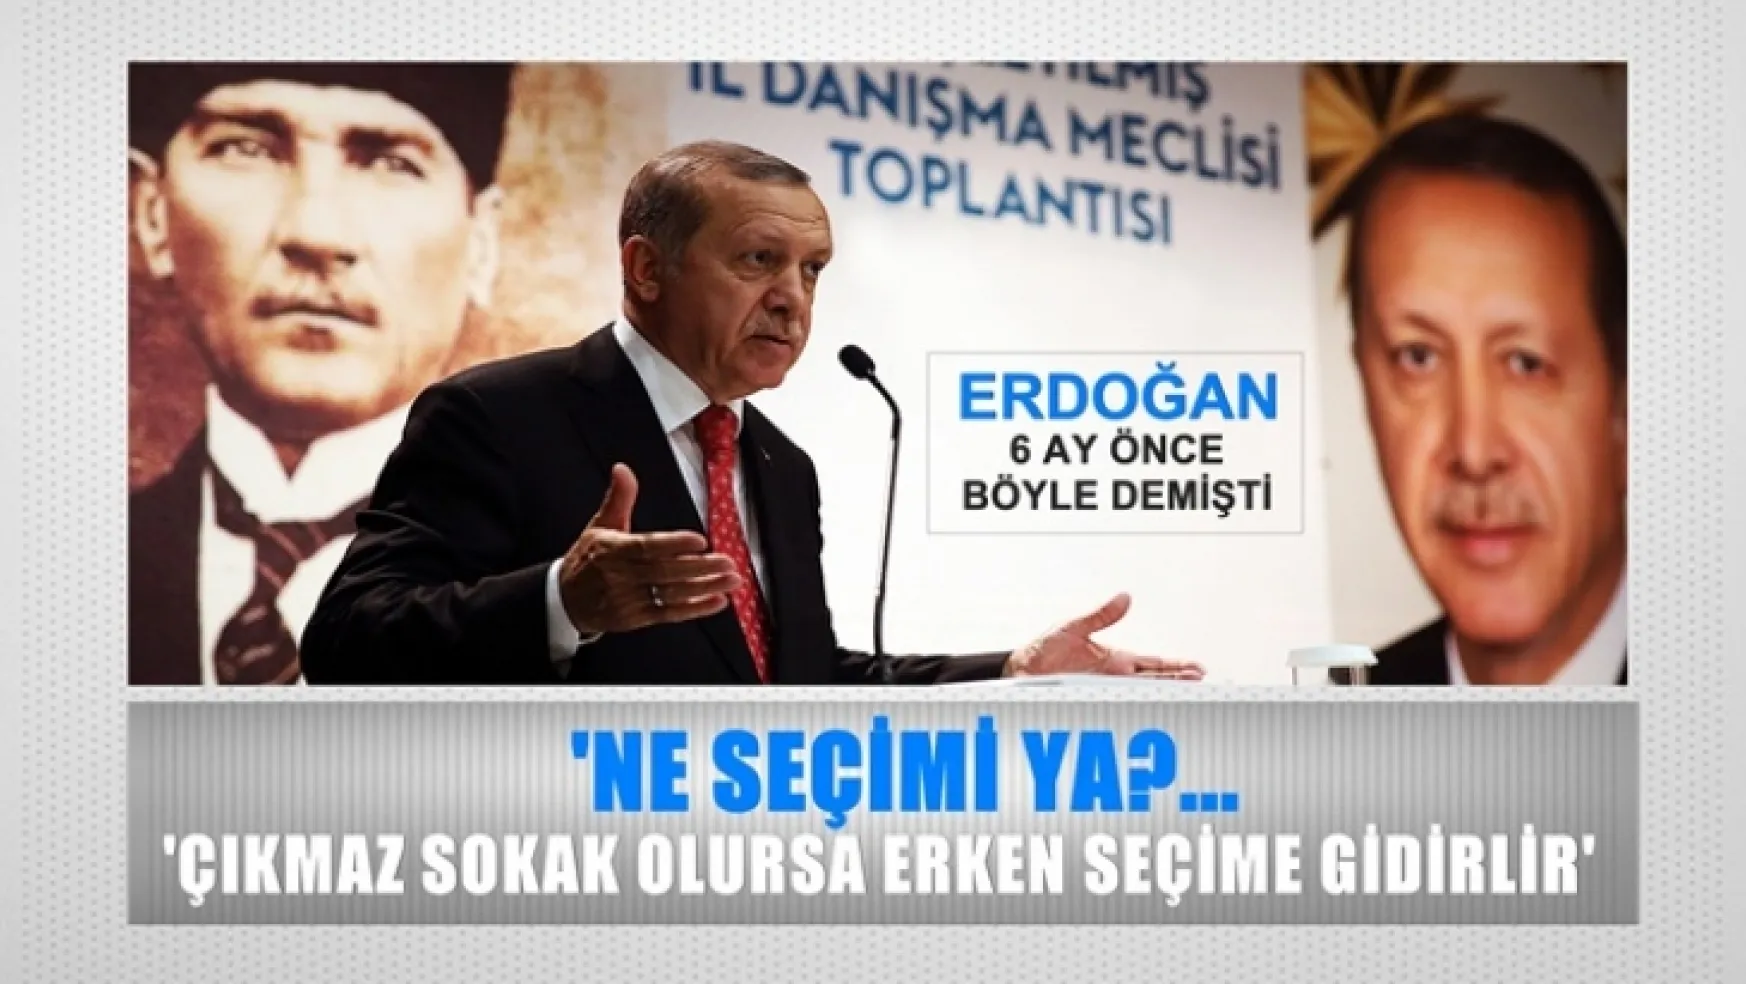 Erdoğan'ın 6 ay önce böyle demişti, 'Ne erken seçimi ya?'